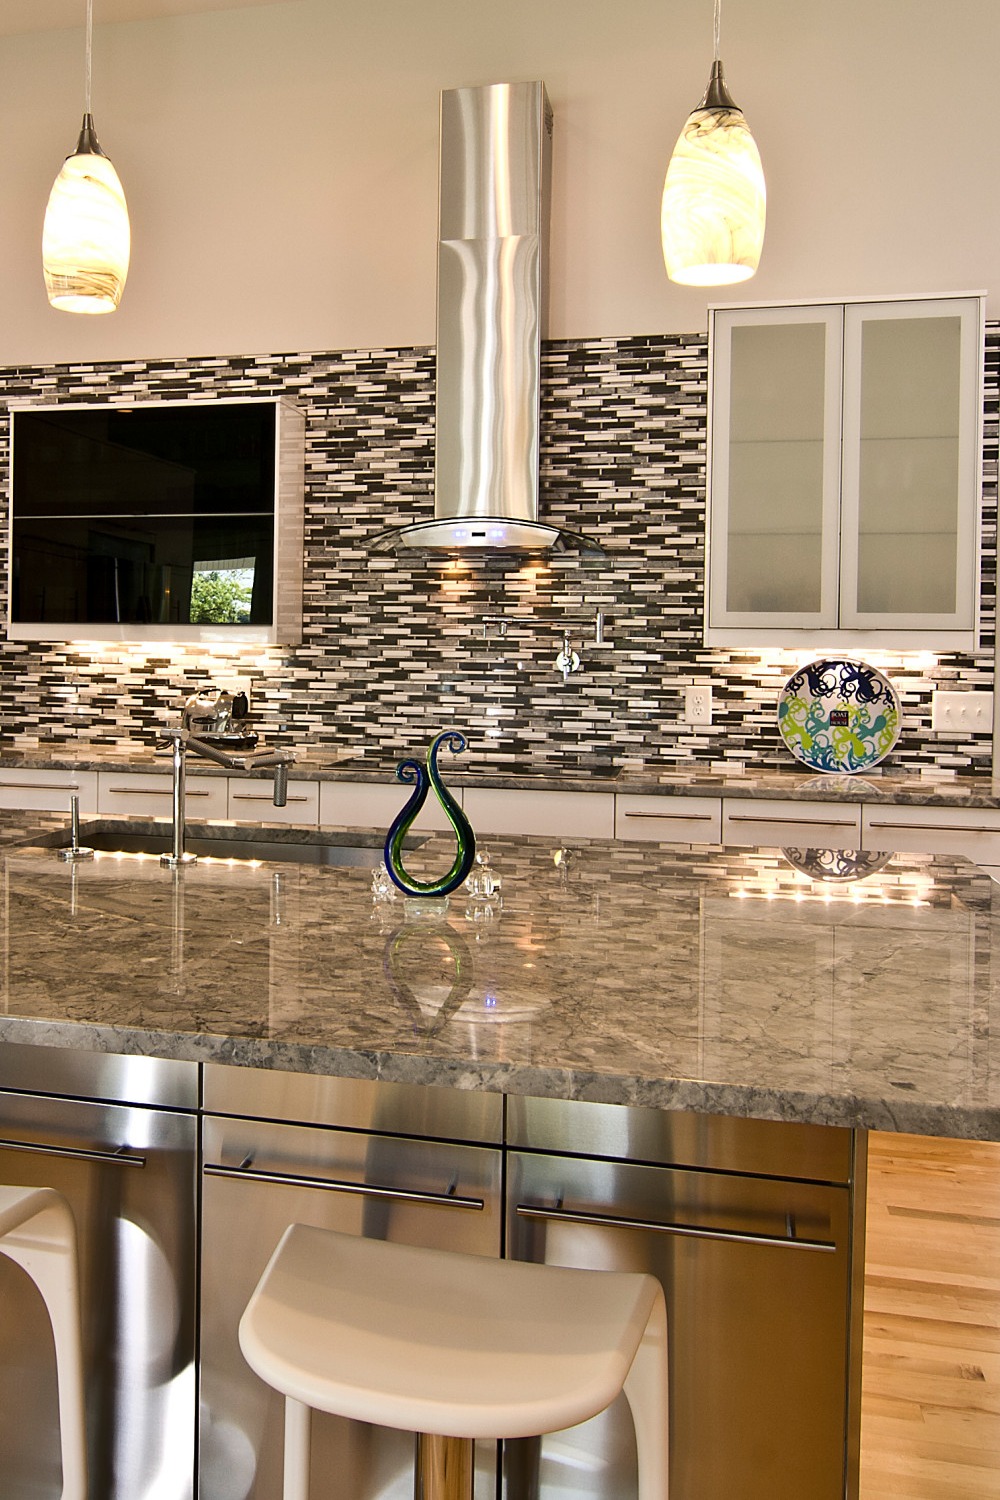 White Granite Countertops Cabinets Mosaic Tile Backsplash Light Wood Floor